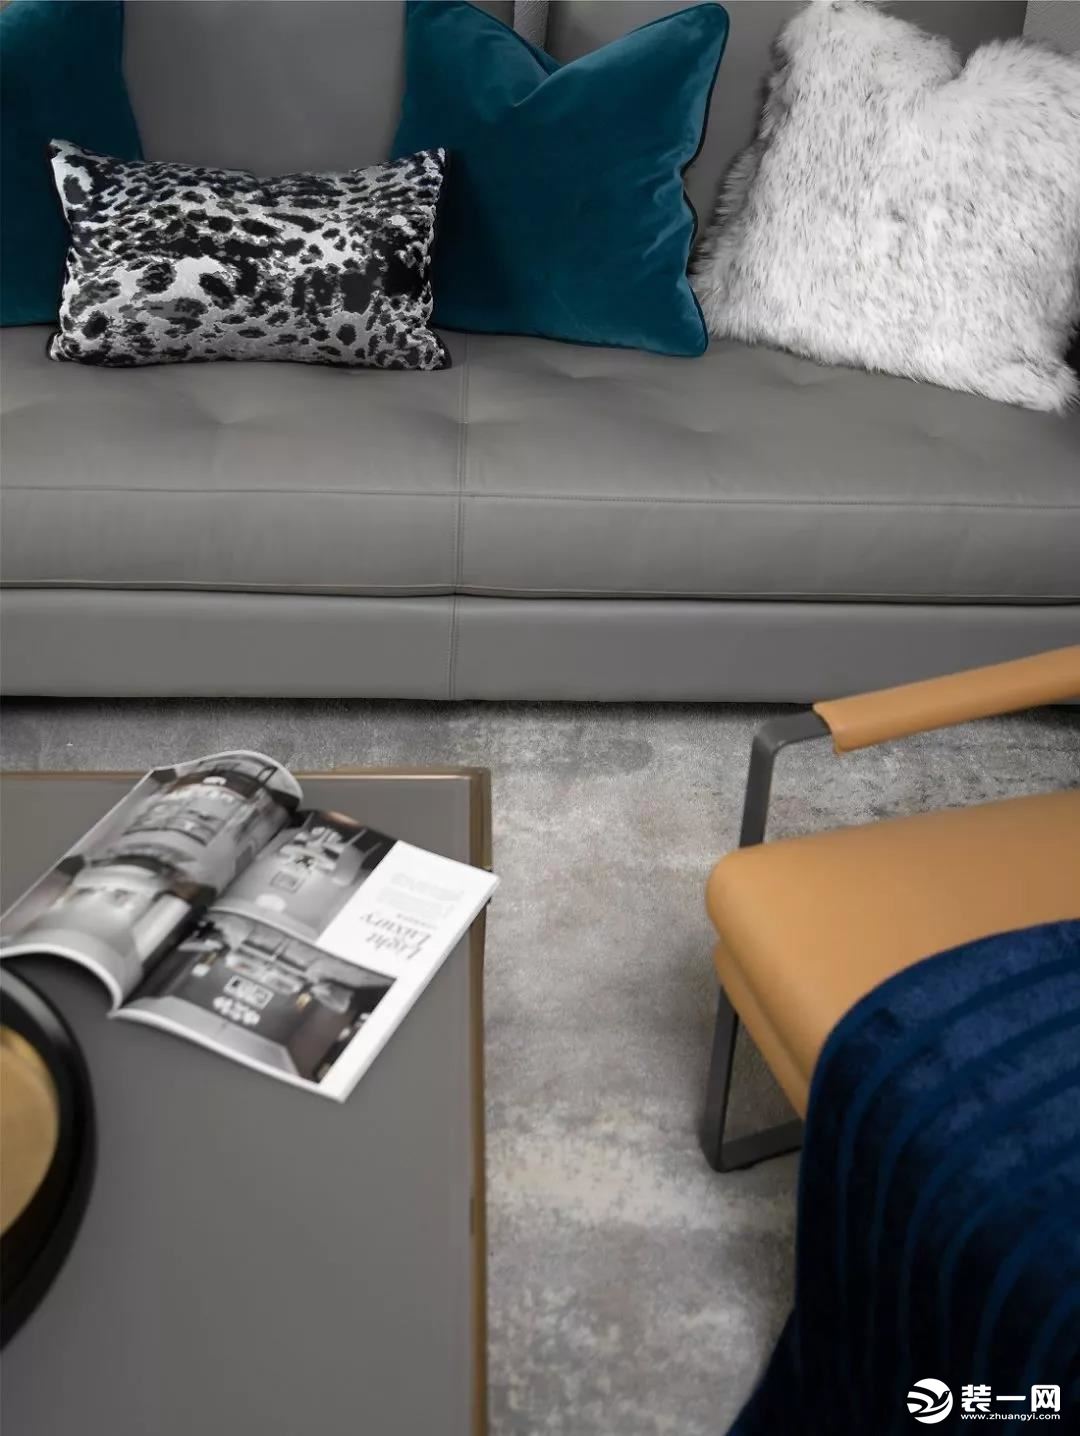 灰色皮质沙发简约而不失高级感，搭配优雅与复古的墨蓝色系软装，释放出轻奢美感。